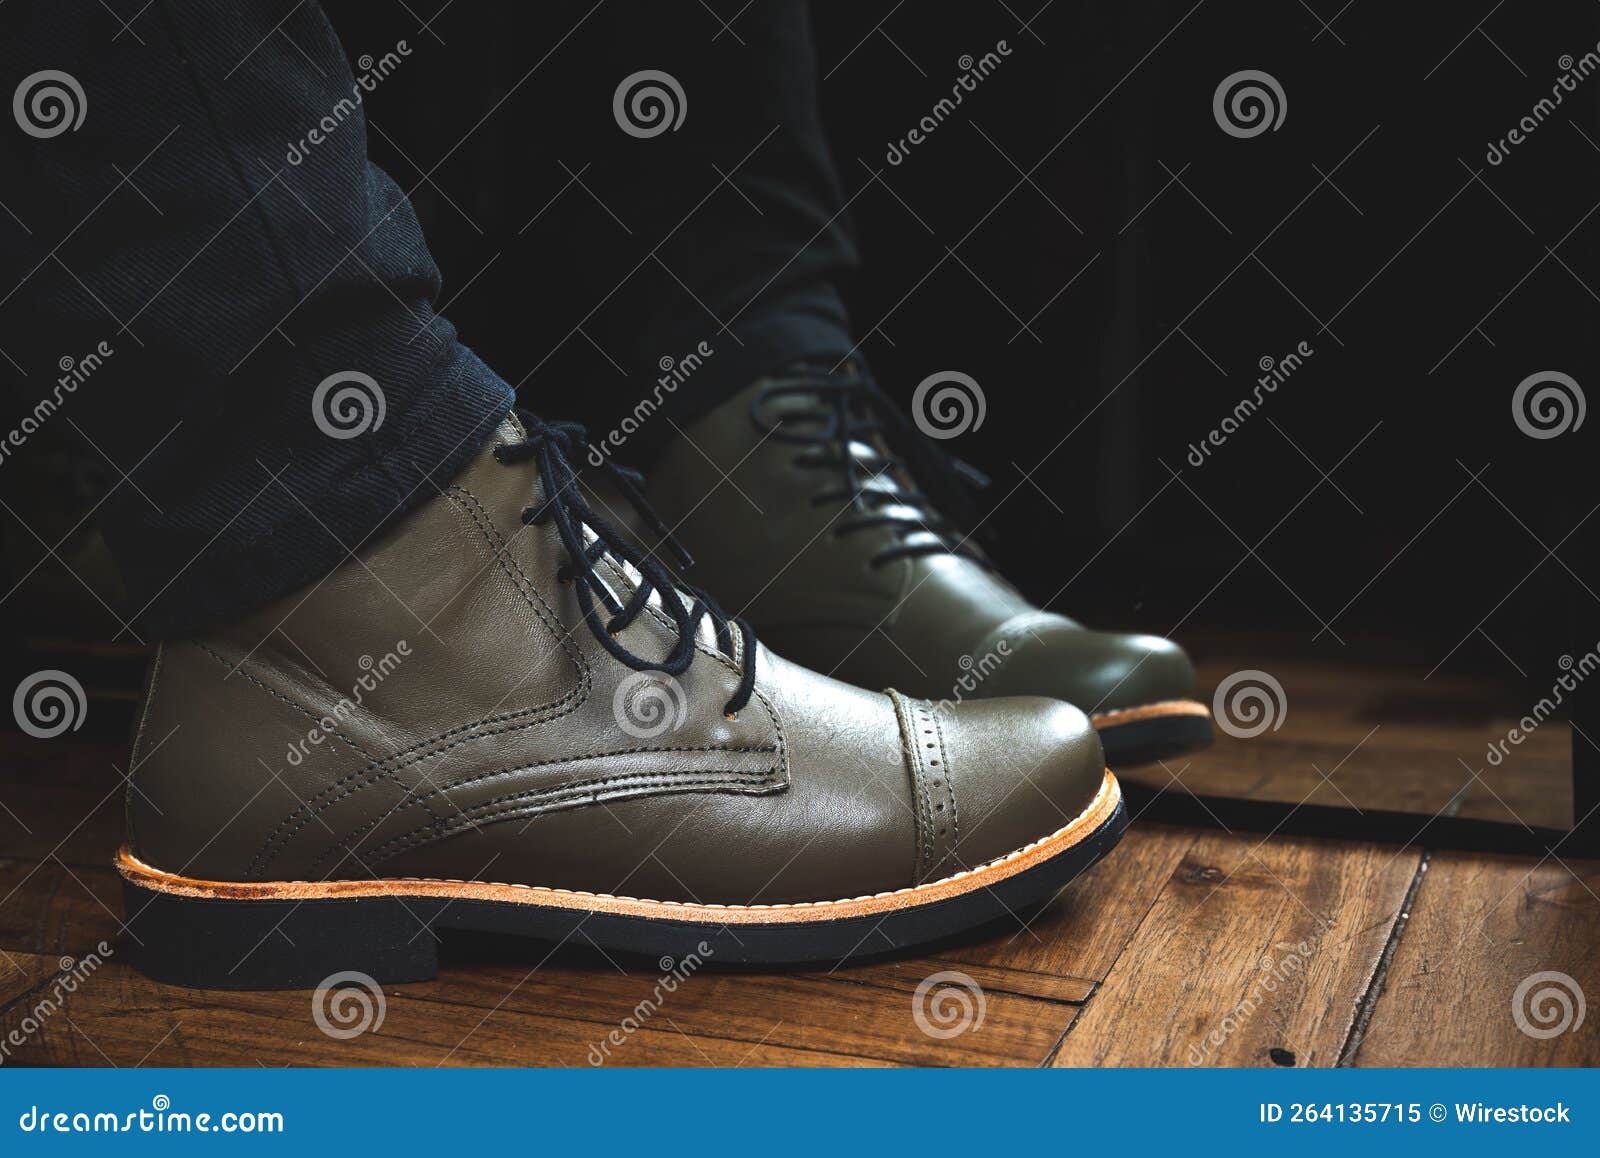 botas zapatos de cuero mujer con suela de goma